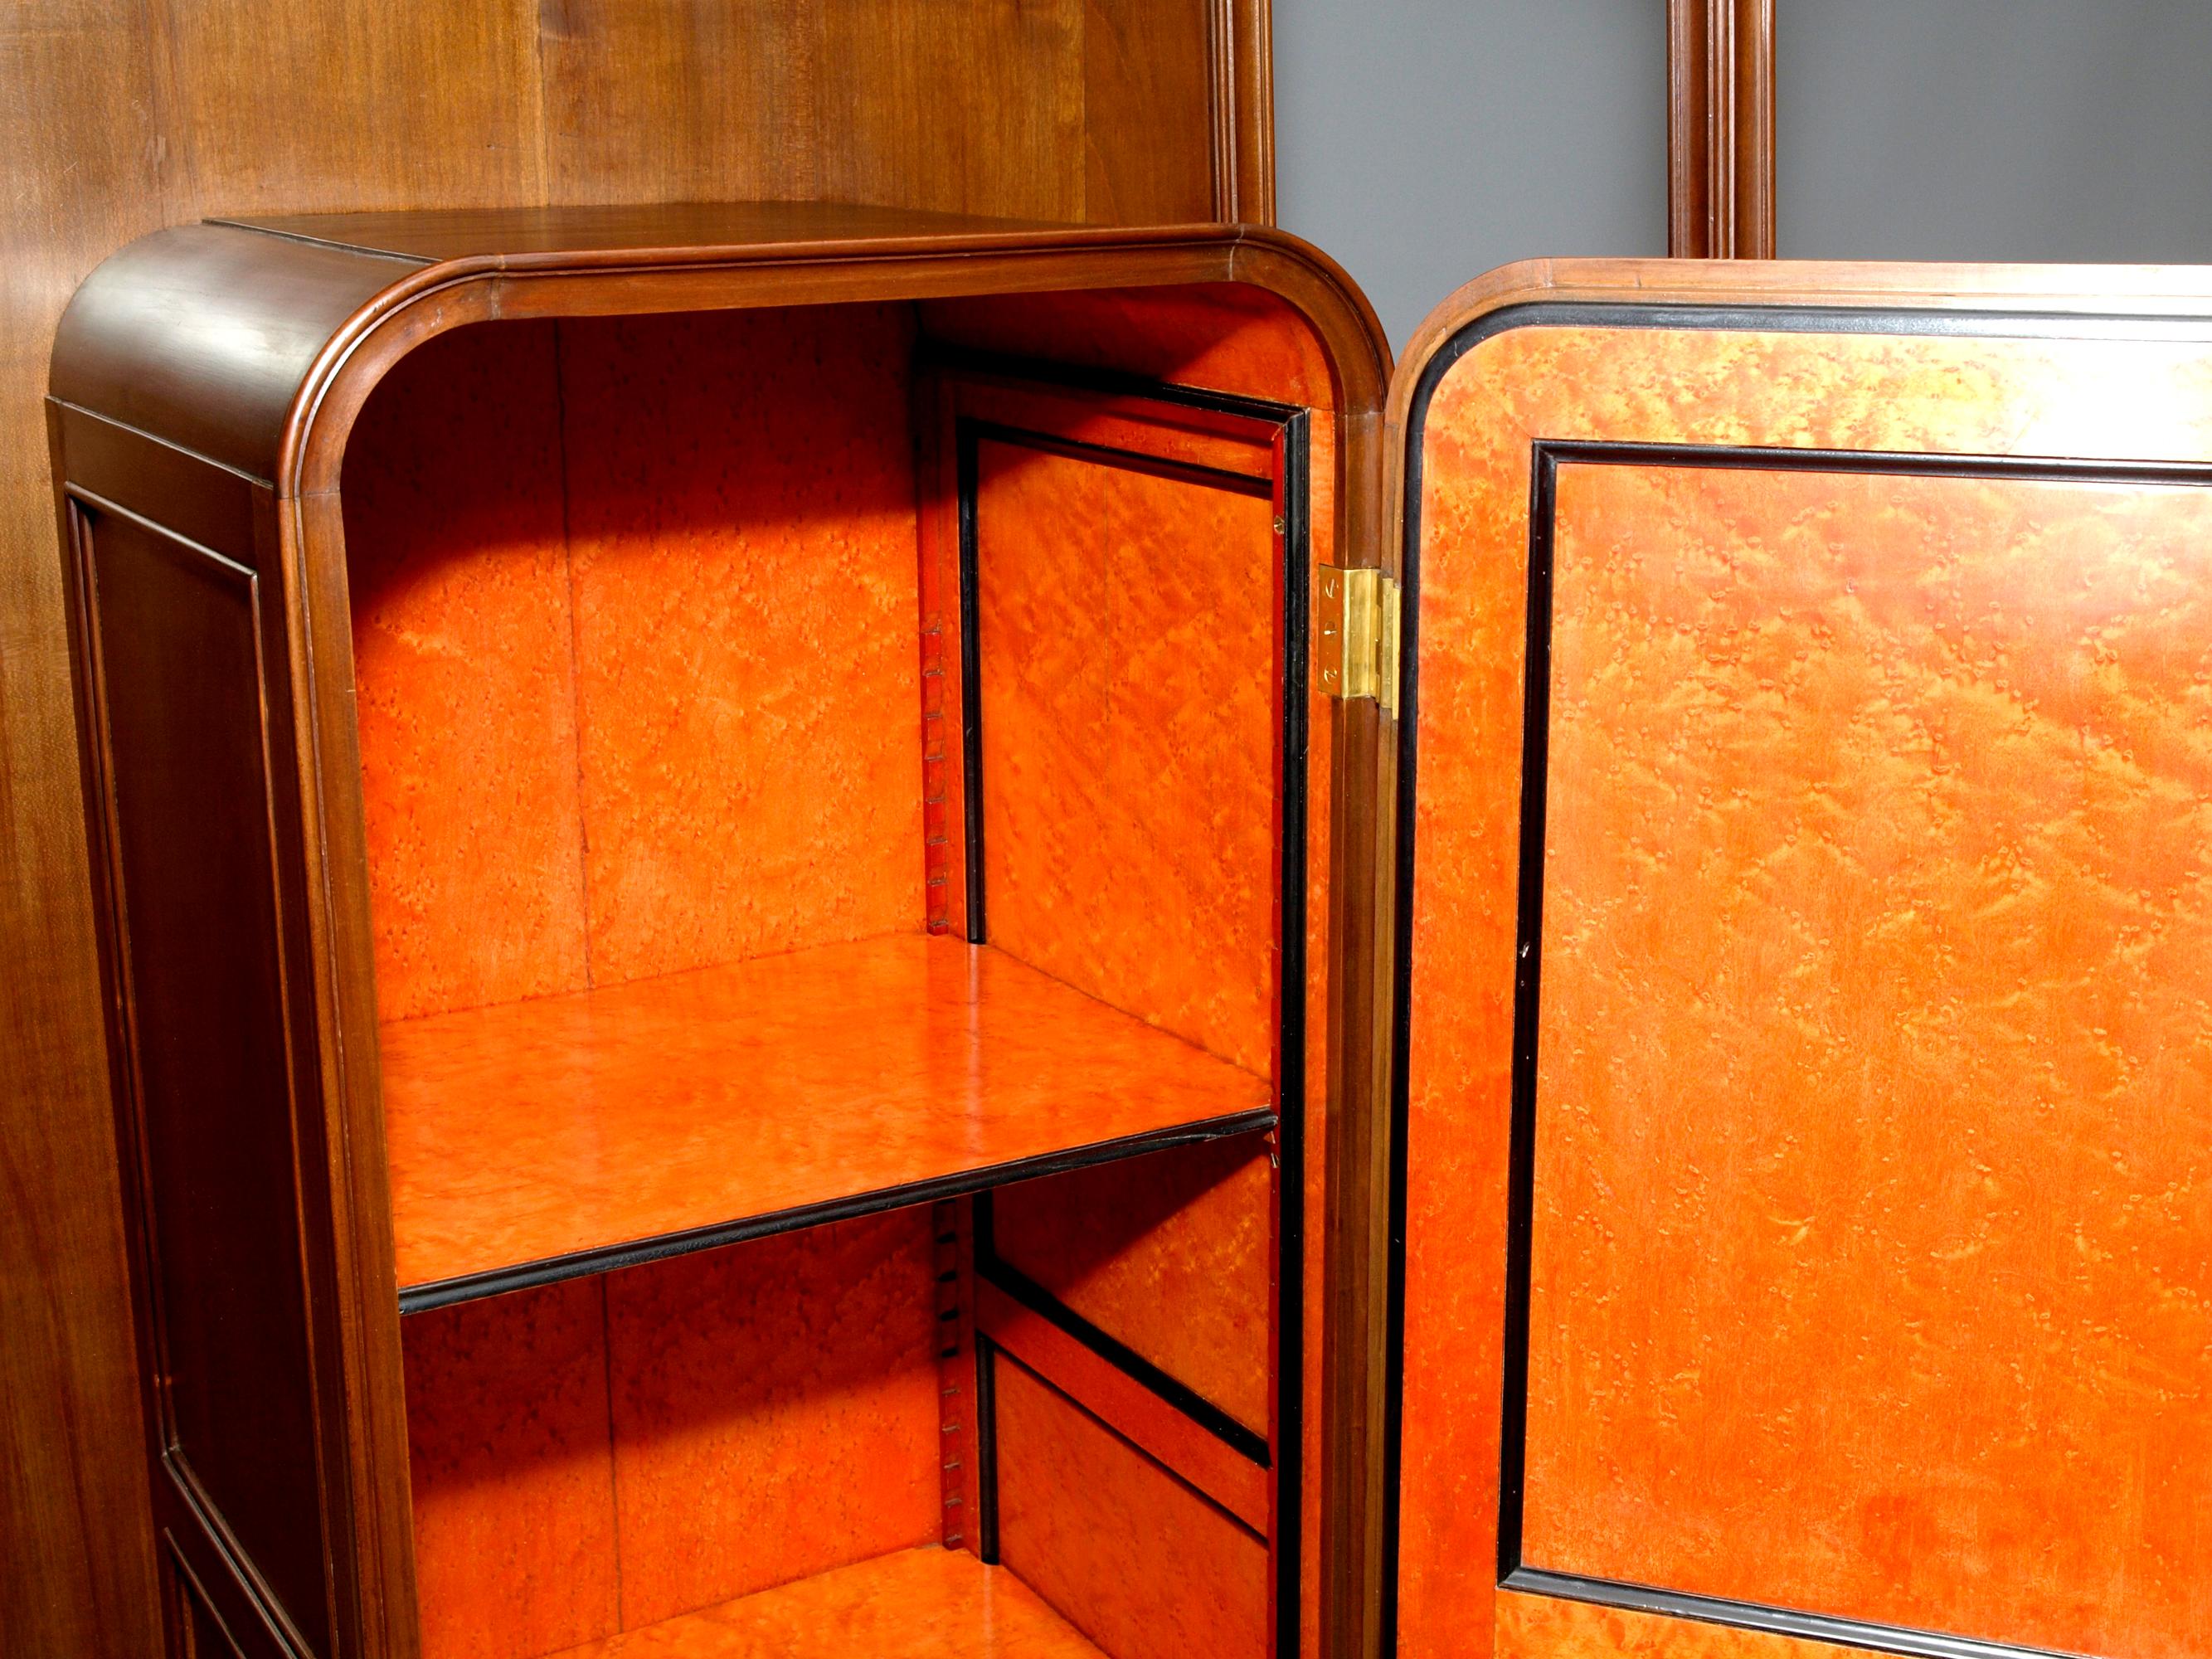 Cloisonne Art Nouveau Cabinet, Louis Majorelle Attributed In Good Condition For Sale In Heiligenberg, DE